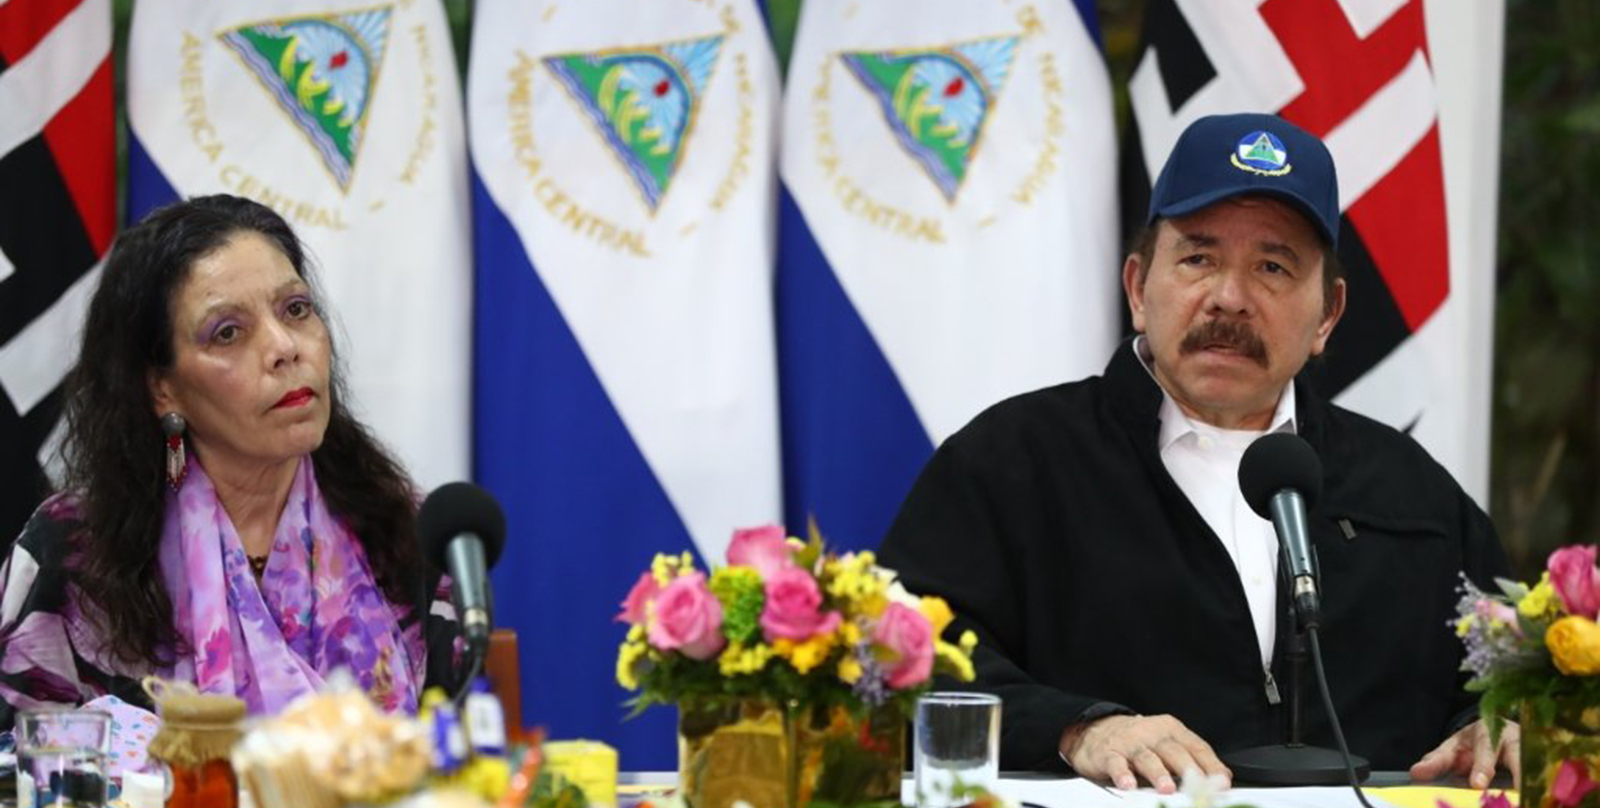 Daniel Ortega durante la celebración del Dia de los Trabajadores donde habló de un relevo y las confrontaciones